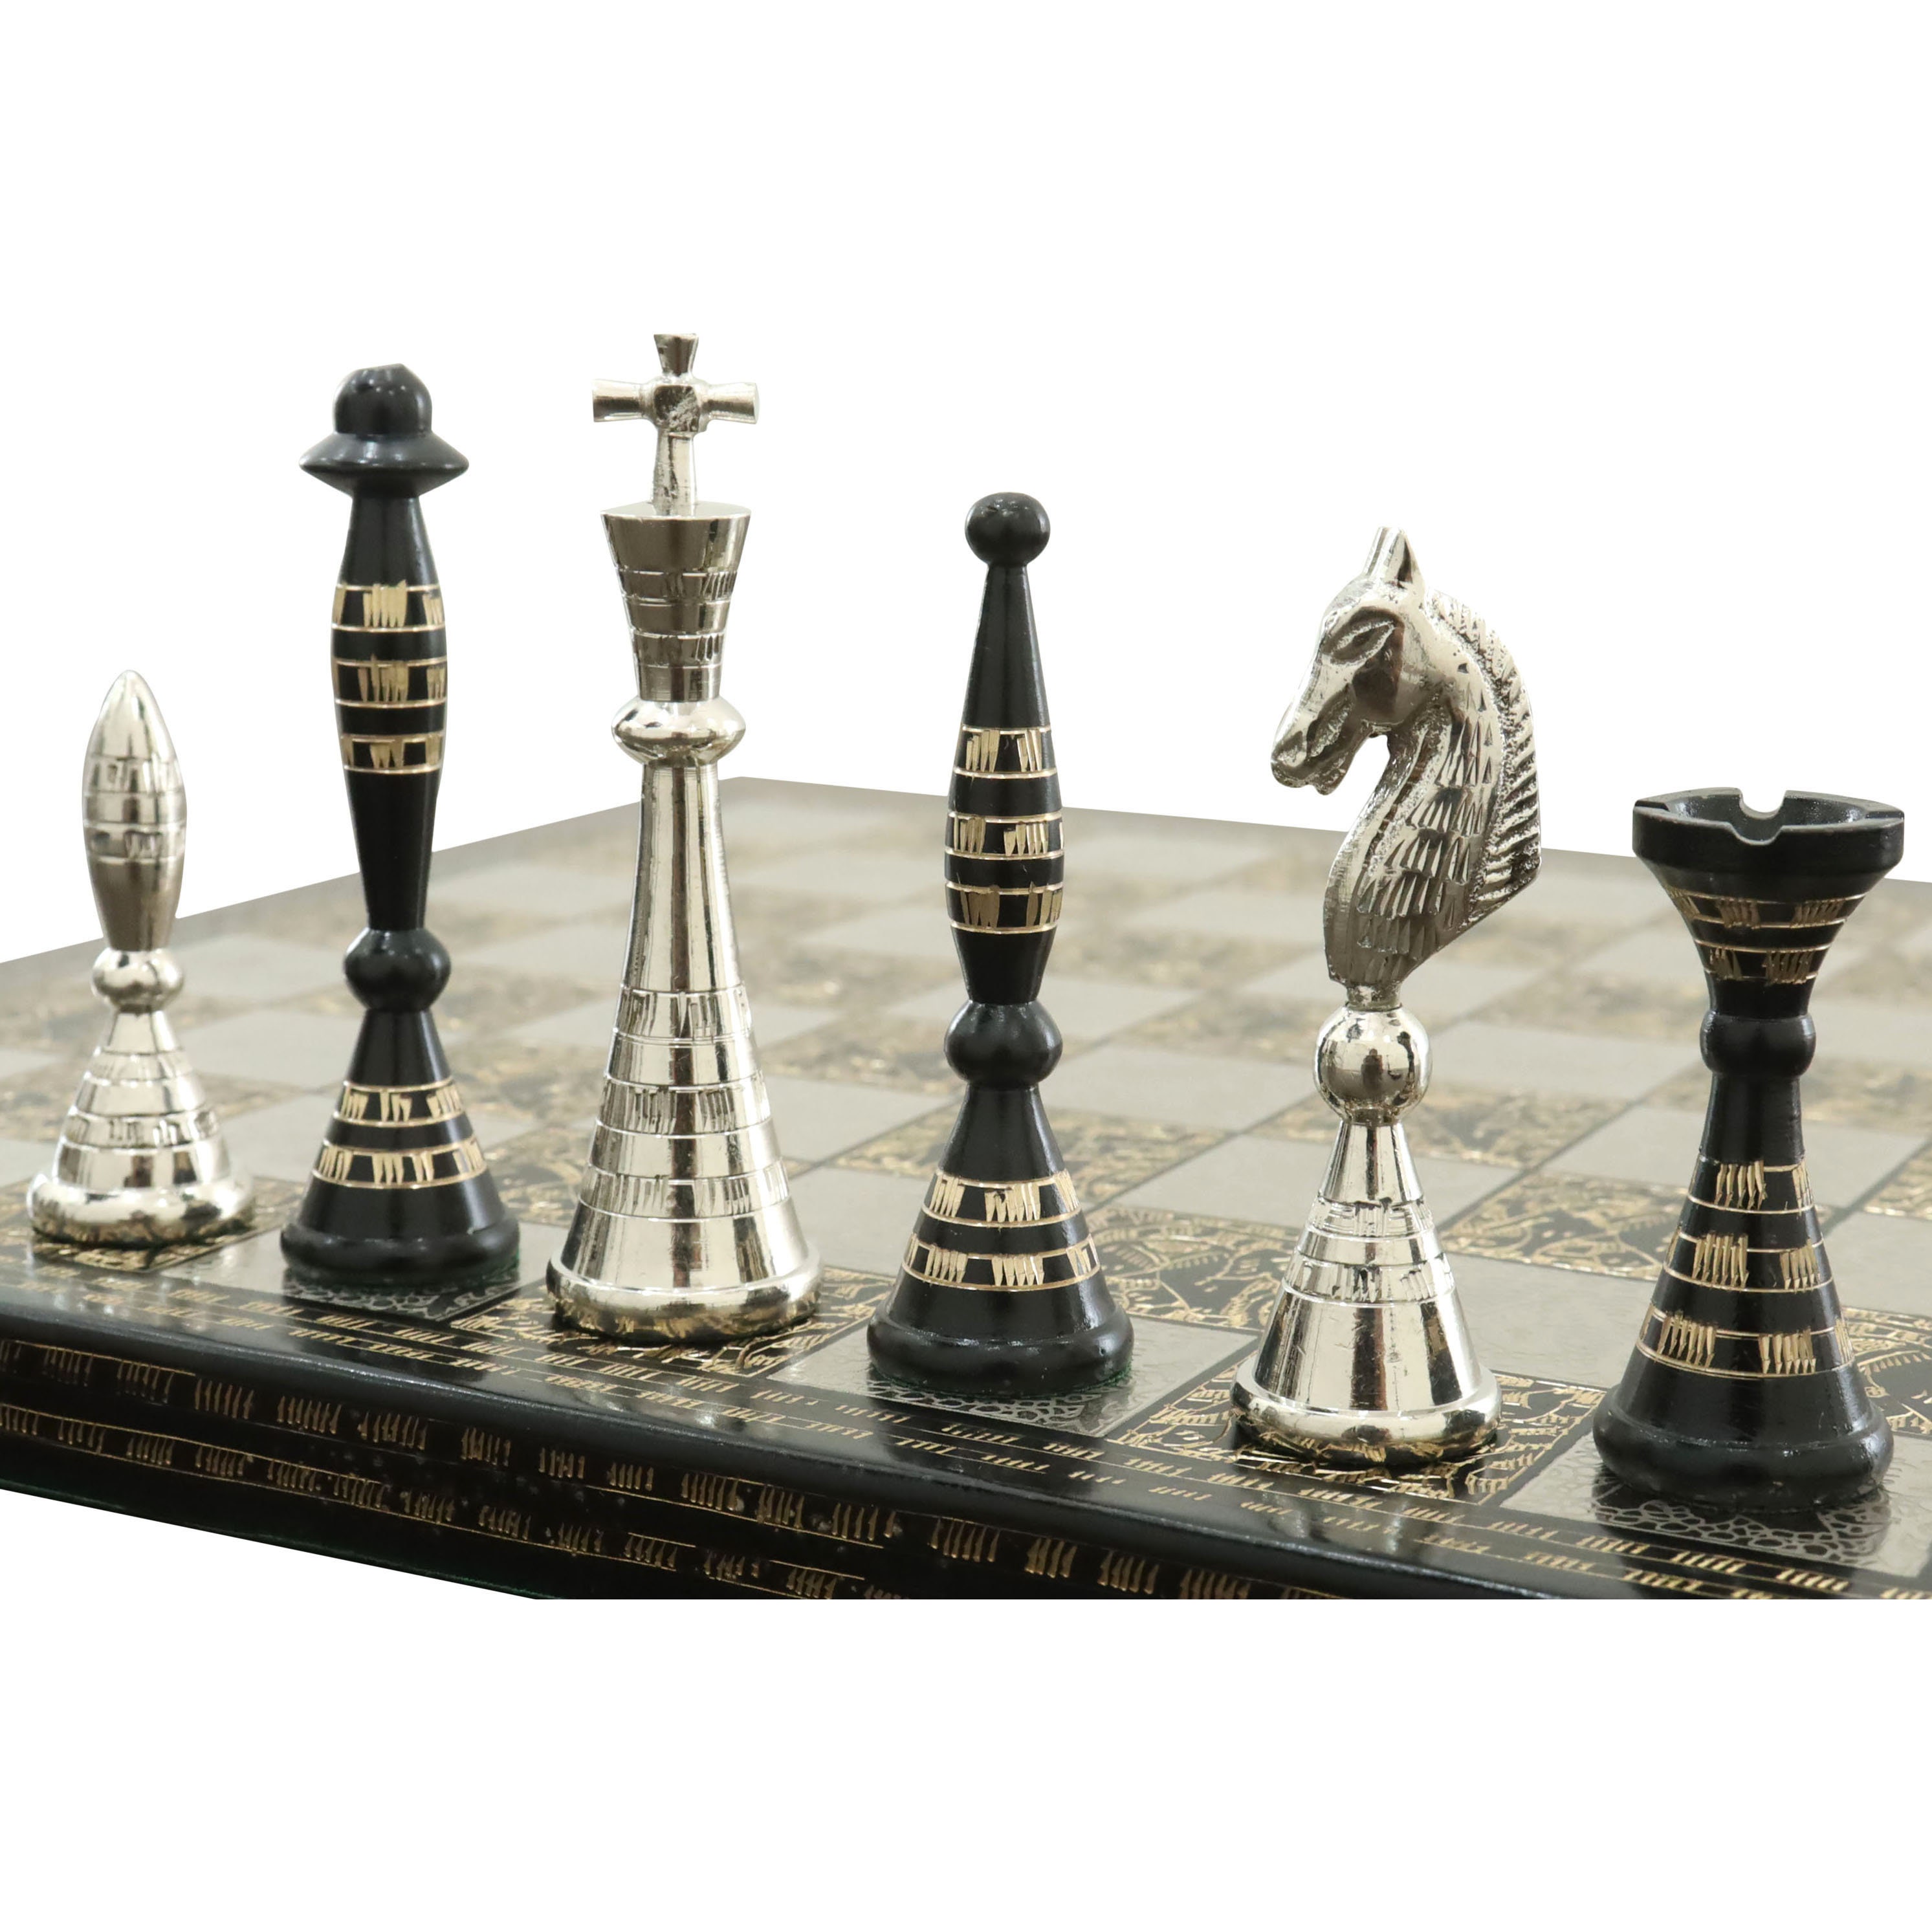 Peças de xadrez esculpidas à mão em um tabuleiro de xadrez de